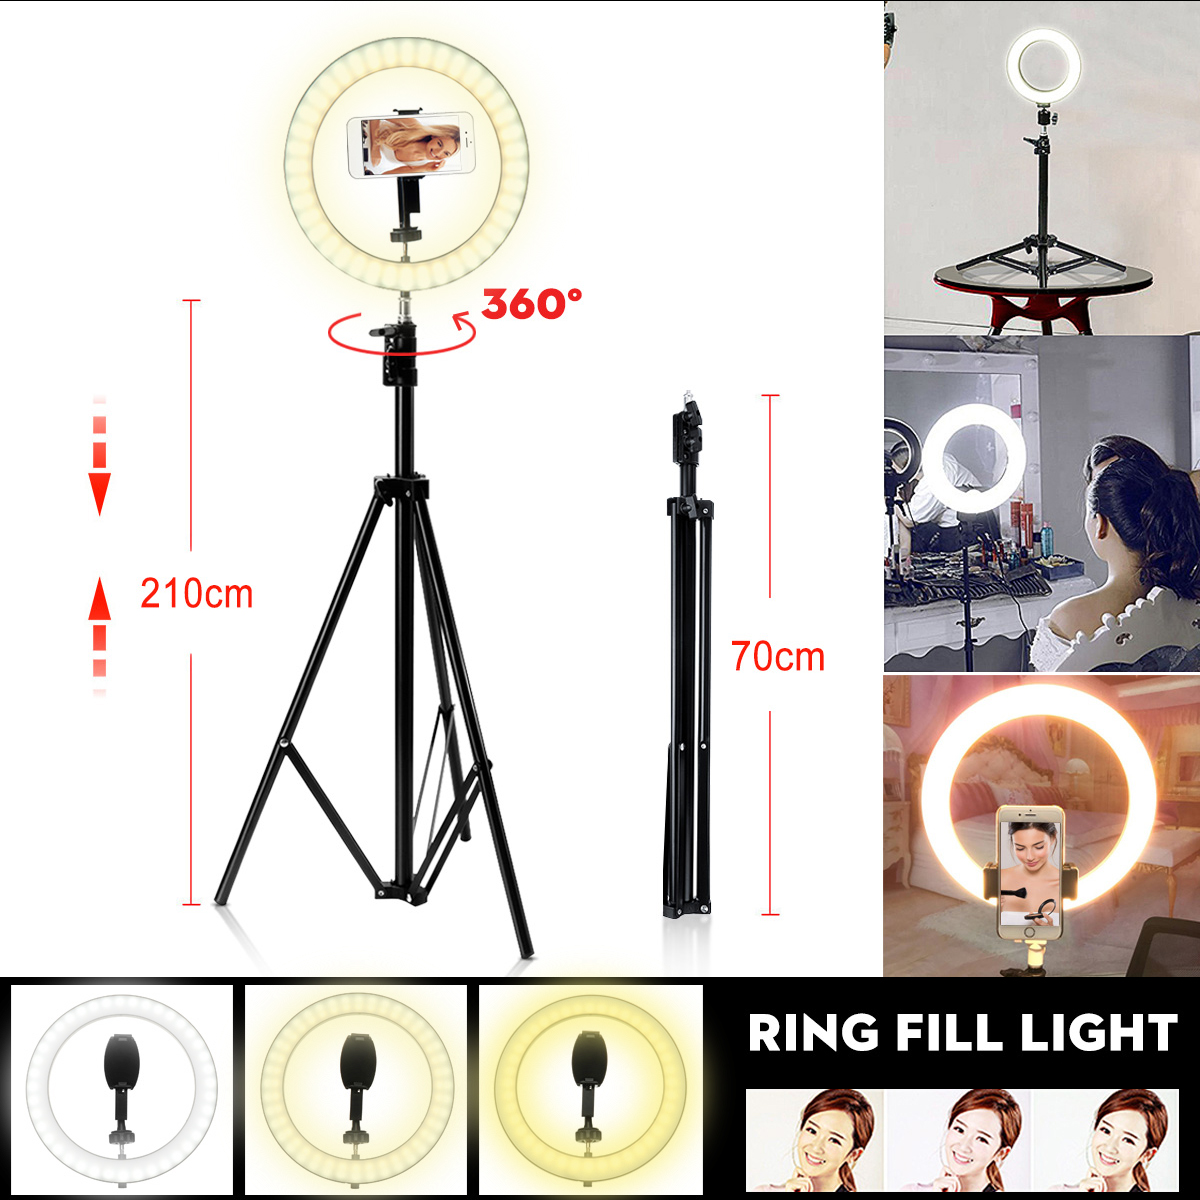 Portable-LED-Ring-Light-Tripod-Stand-Live-Selfie-Holder-USB-Plug-10-Inch-Fill-Light-for-YouTube-Tikt-1431335-4